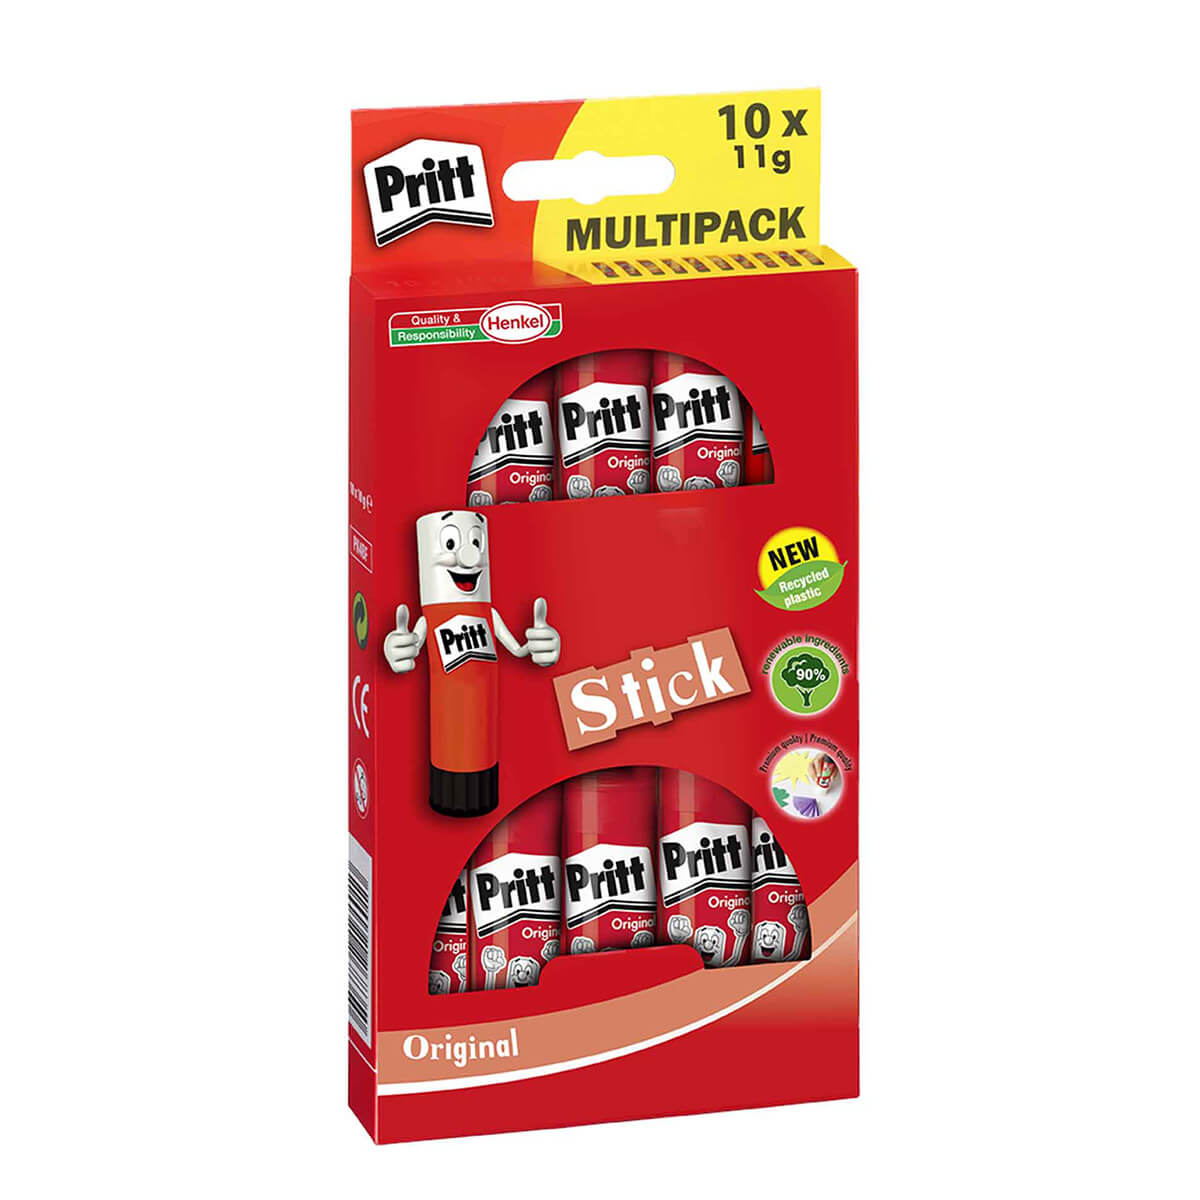 Pritt Glue stick multipack 10 x 11g